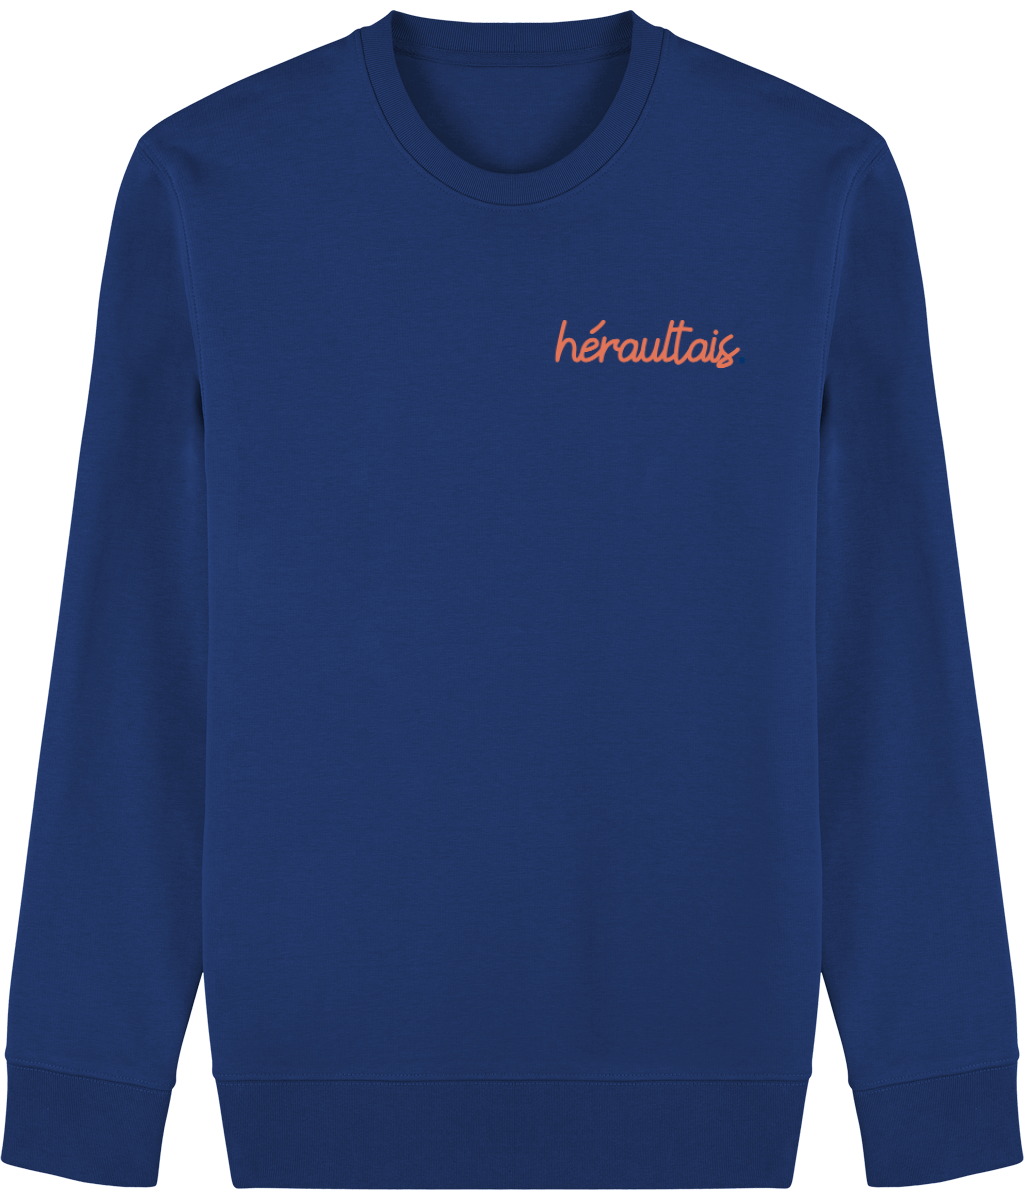 Hérault embroidered sweatshirt